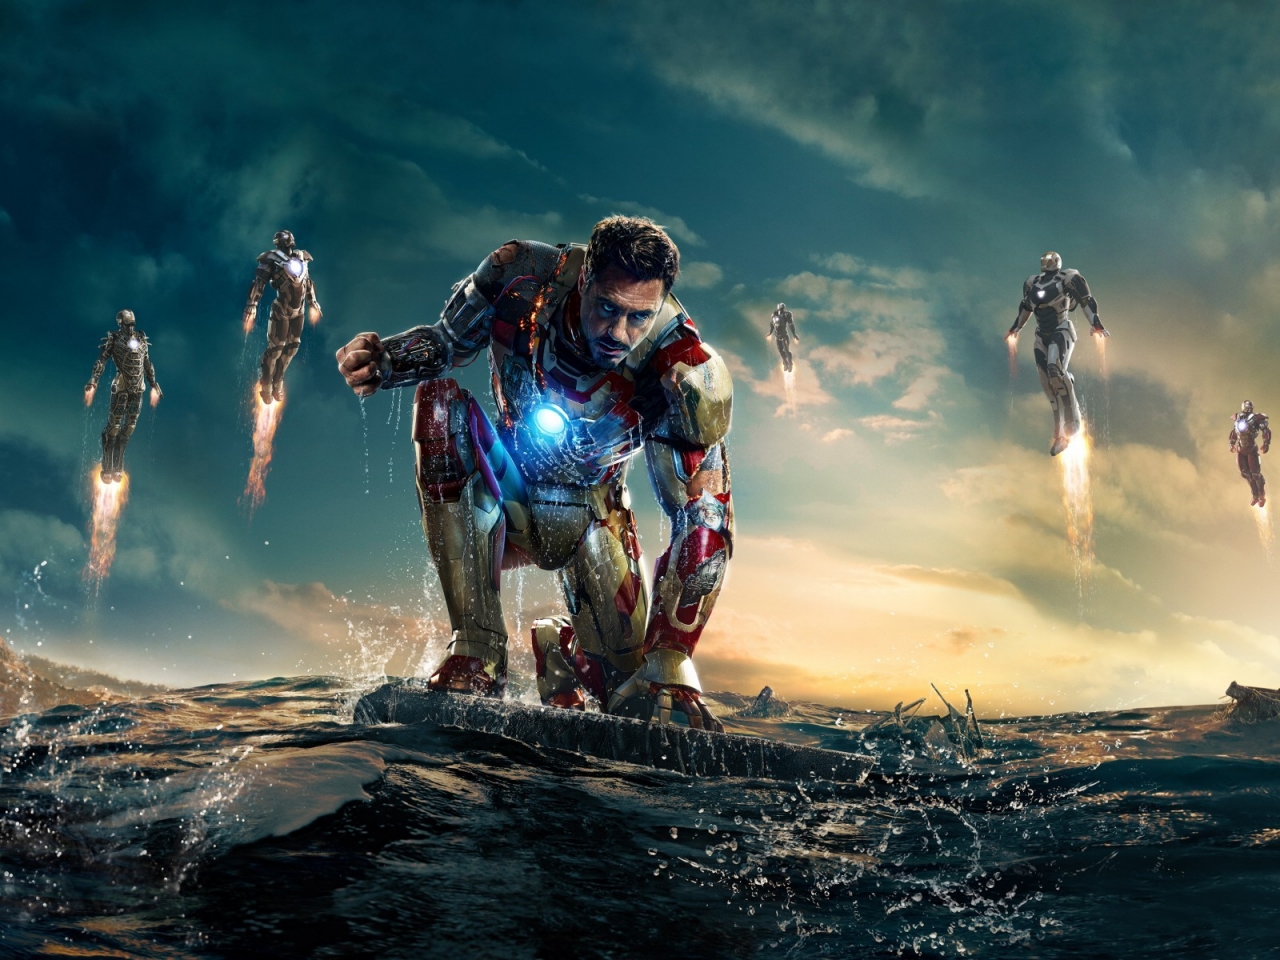 Iron Man 3 Robert Downey Jr for 1280 x 960 resolution